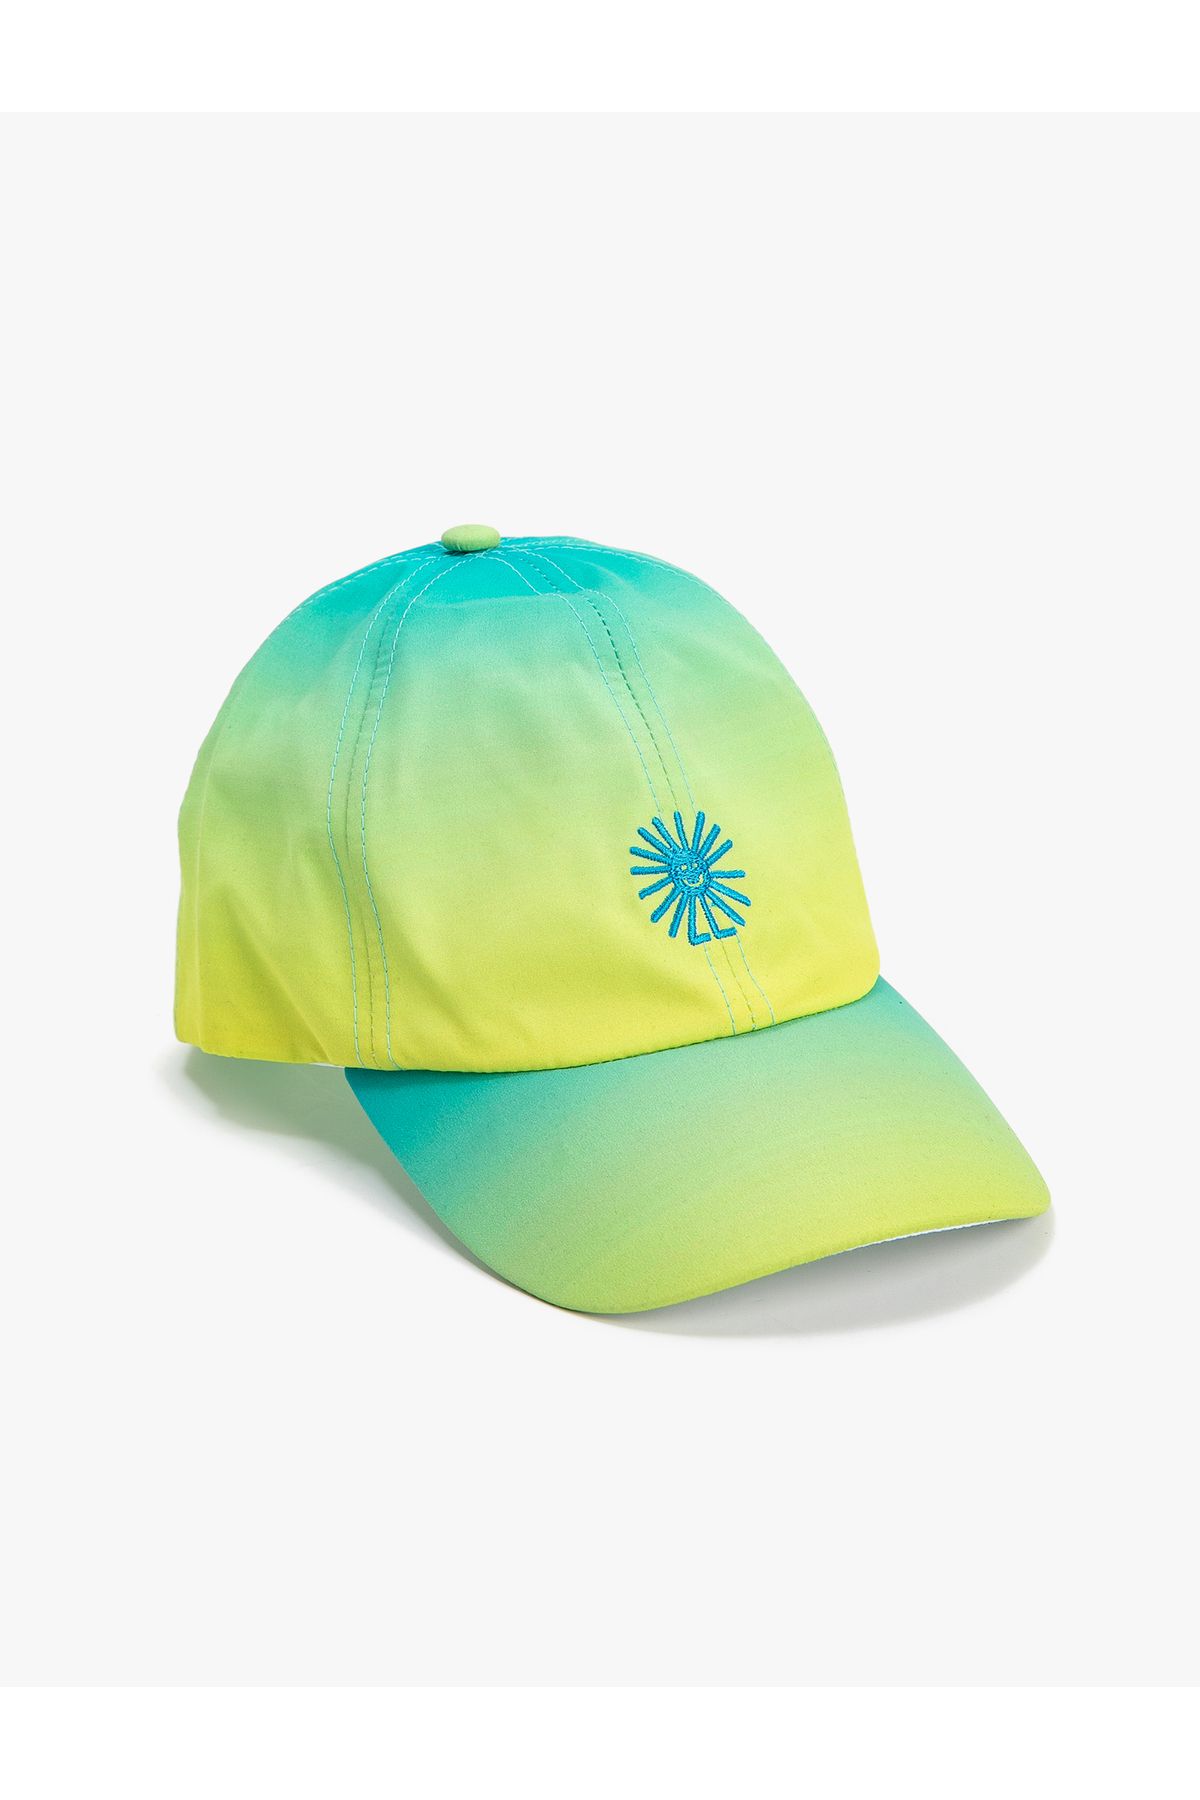 Koton Cap Şapka Işleme Detaylı